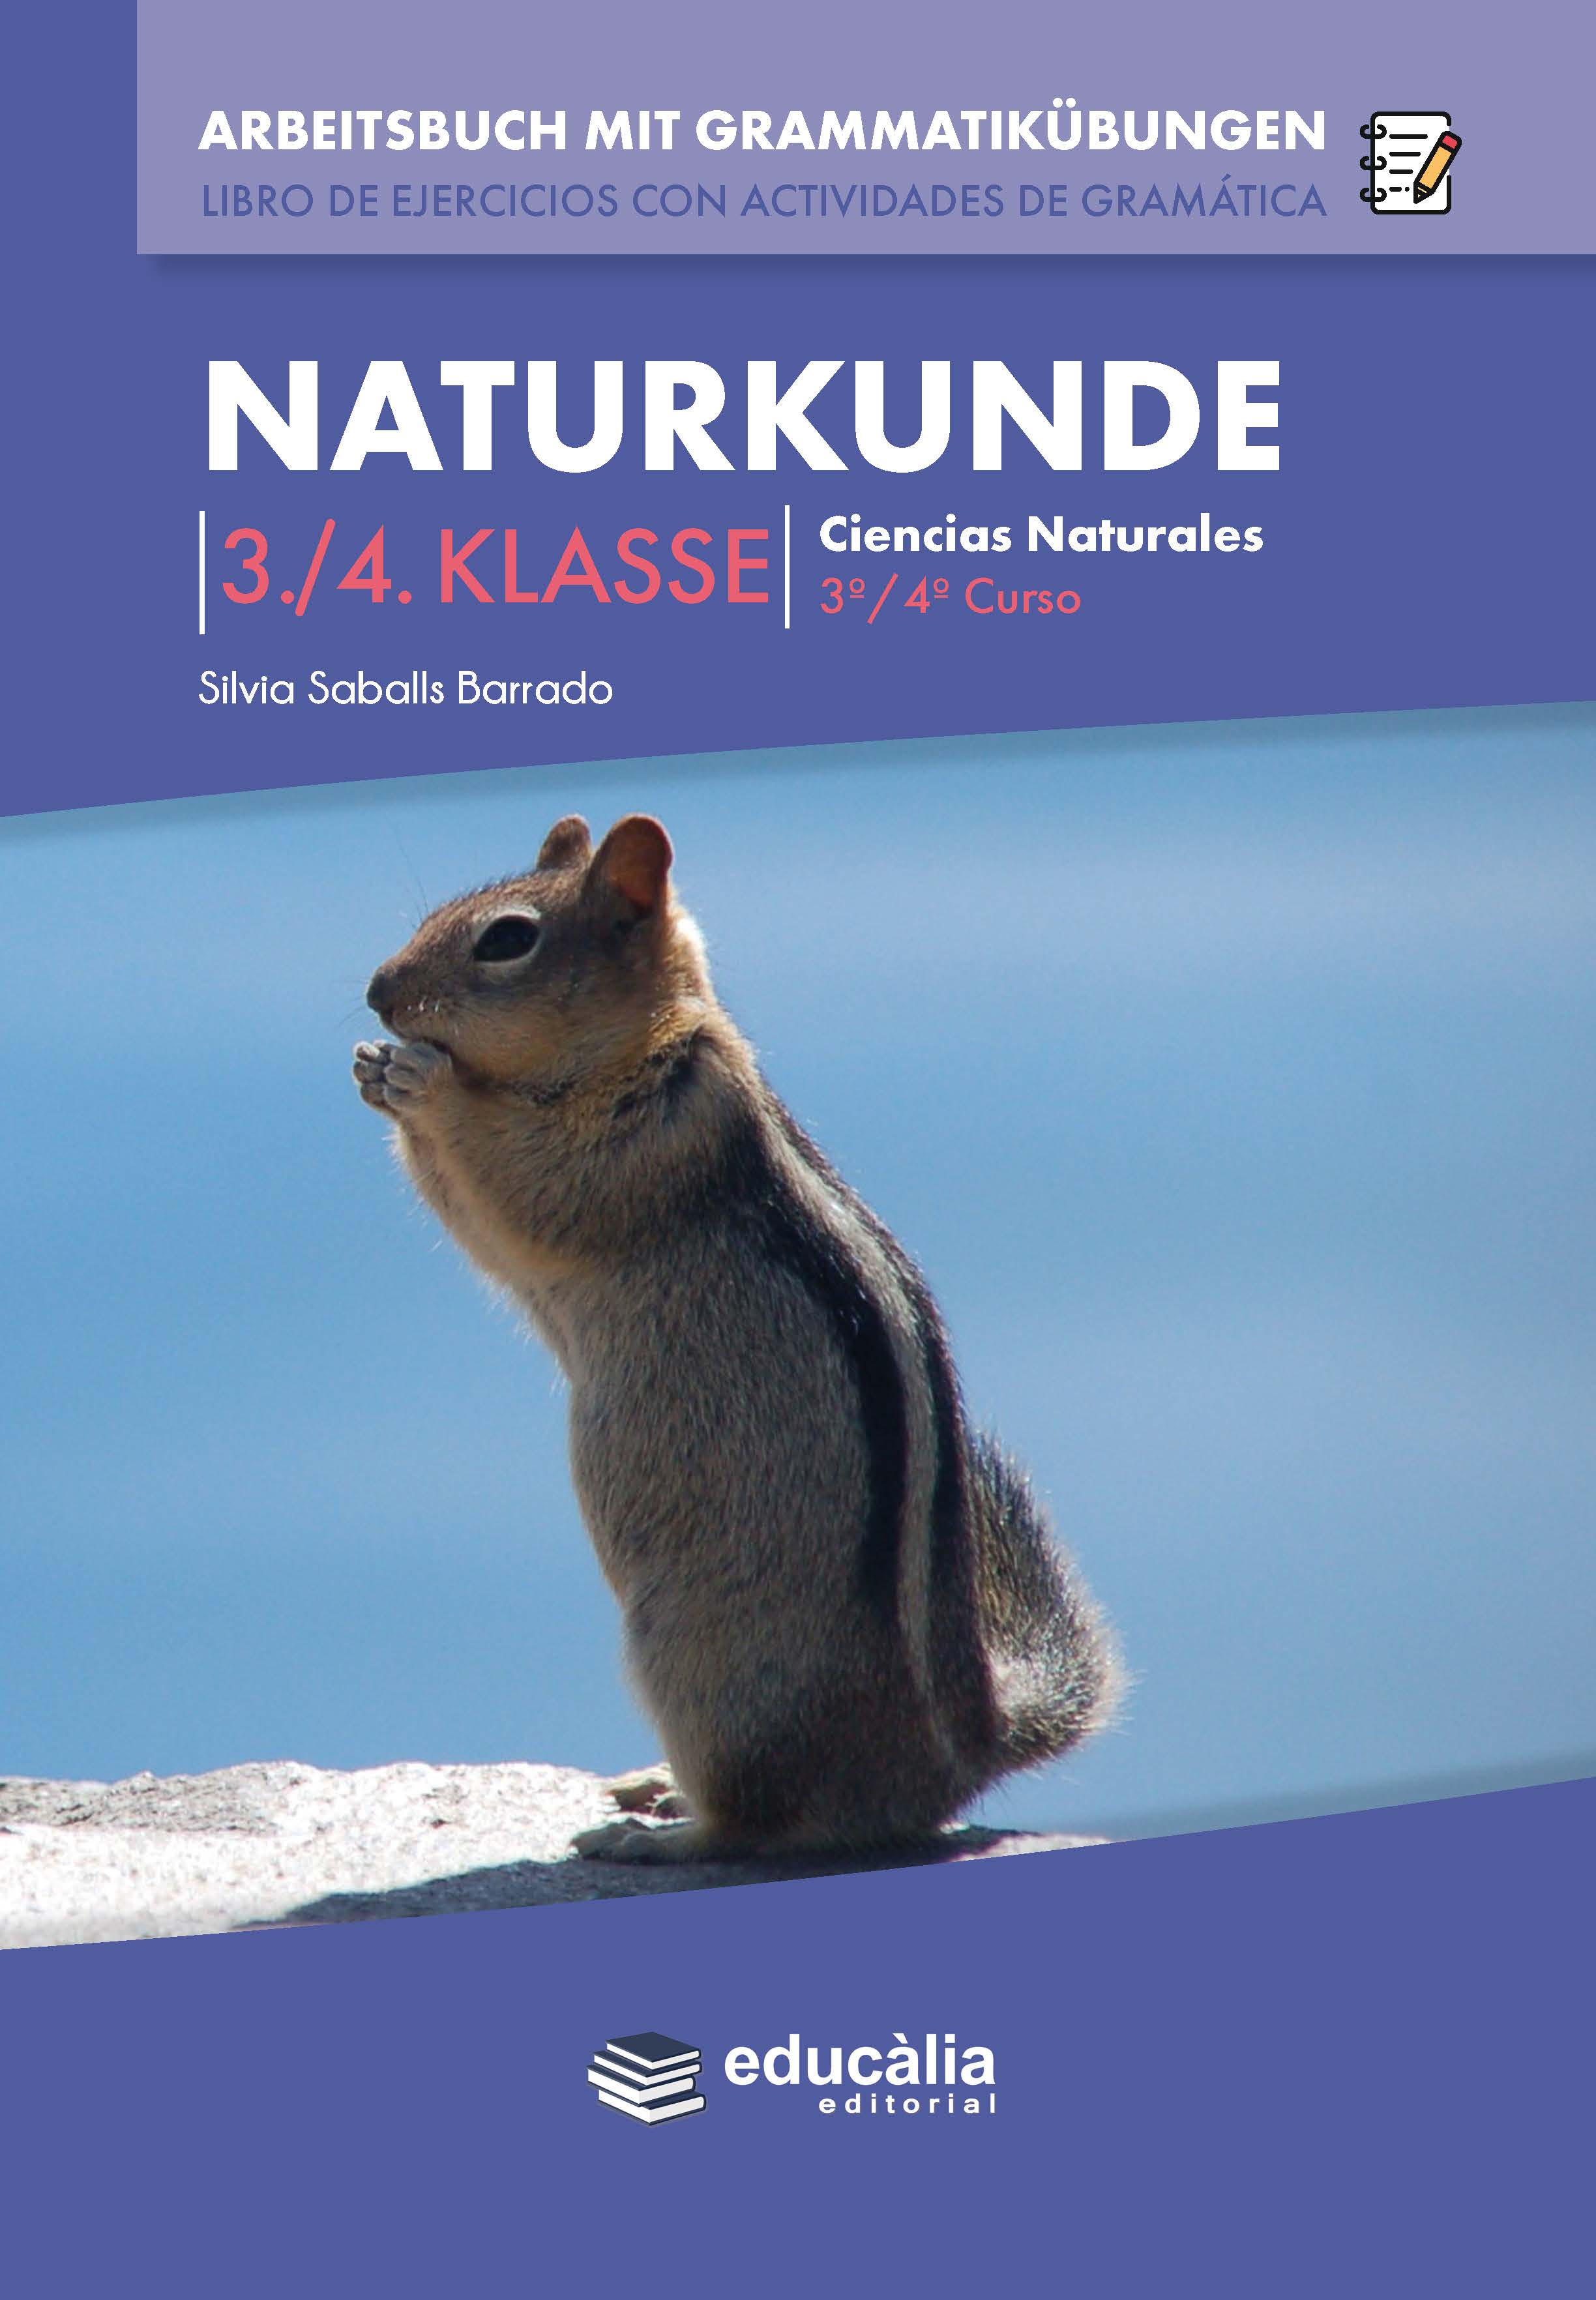 Naturkunde 3./4. Klasse Arbeitsbuch mit Grammatikübungen. Libro de ejercicios con actividades de gramática